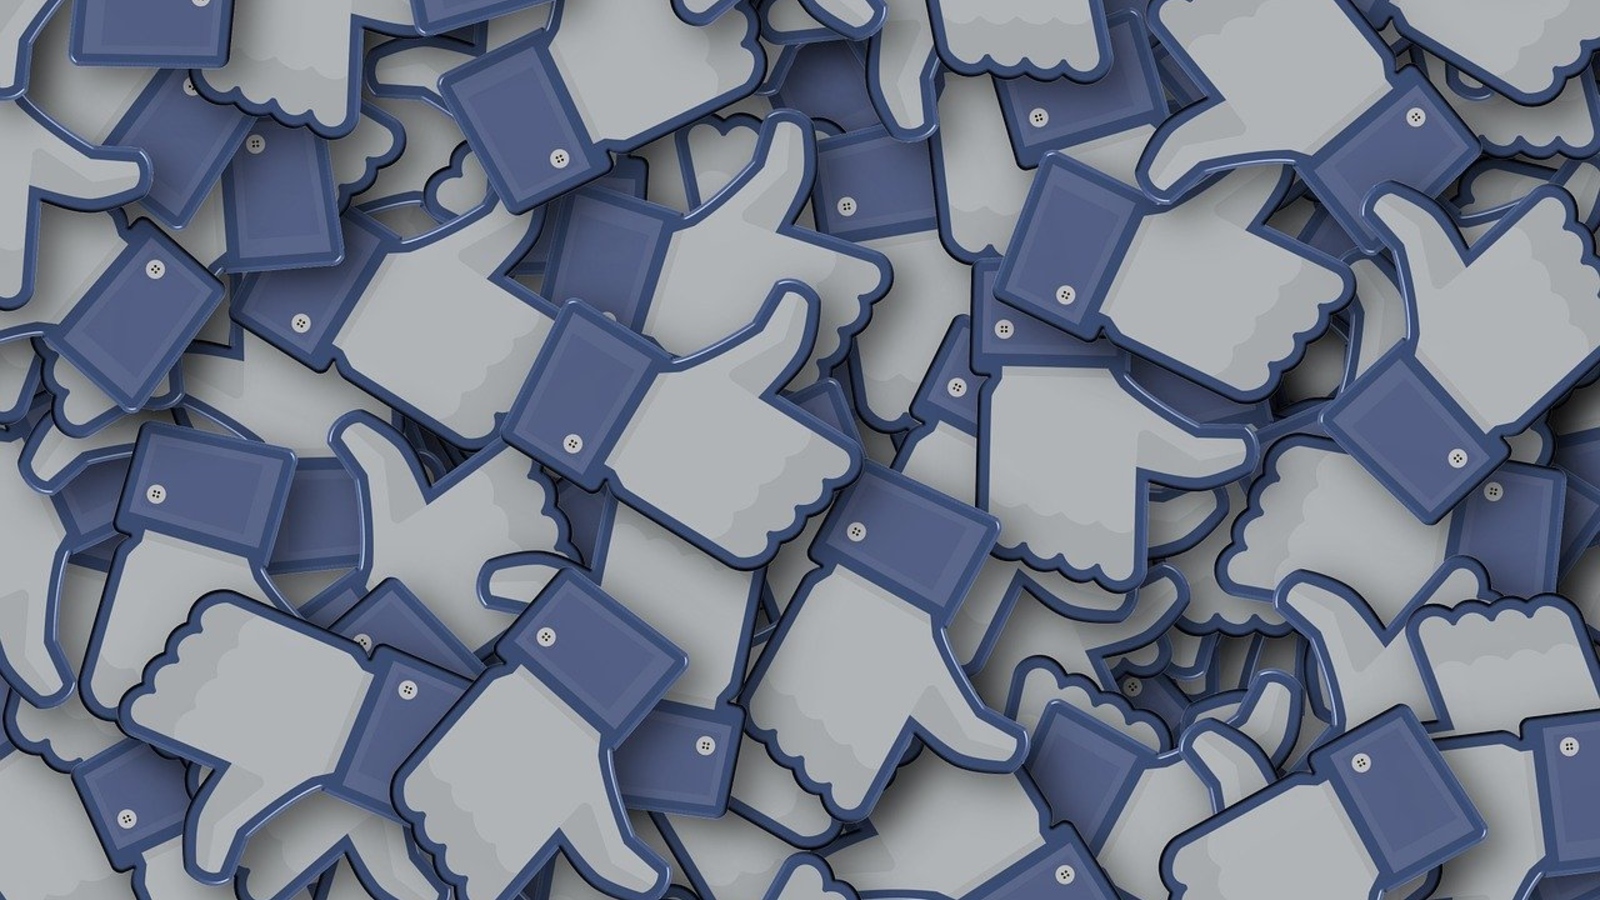 La plus haute juridiction allemande juge que Facebook abuse de sa position pour collecter des données